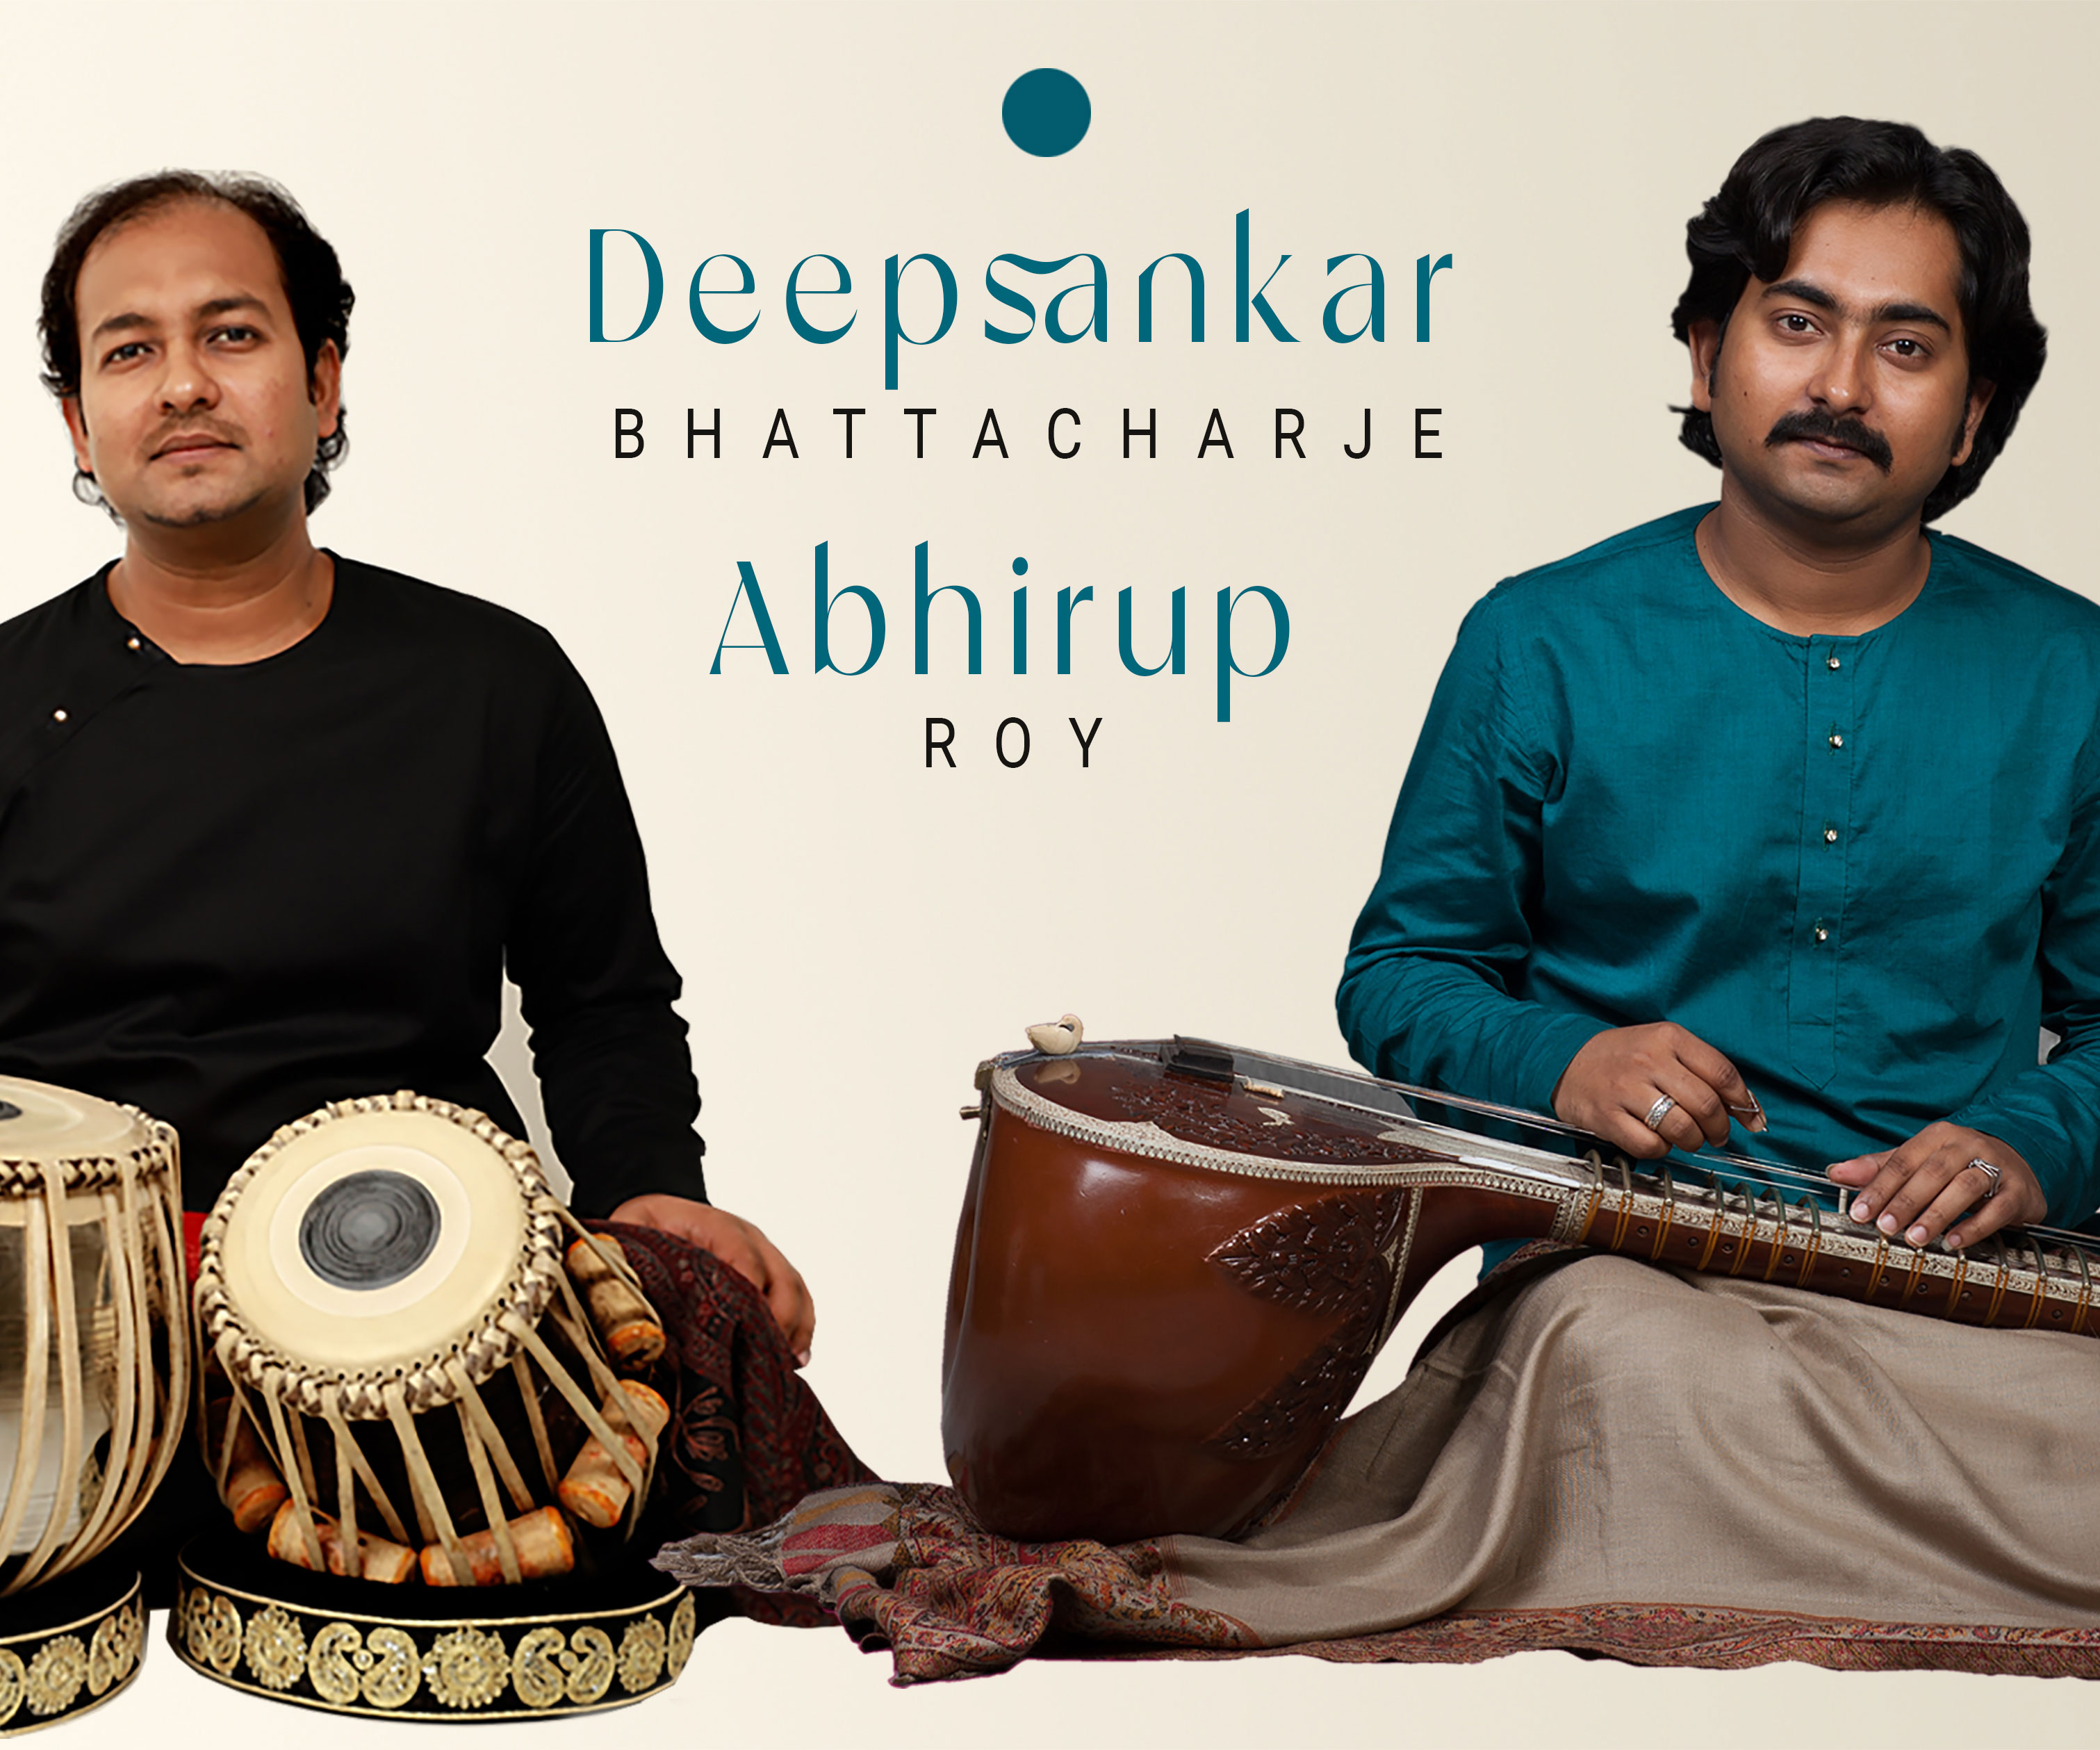 Musik aus Indien mit Deepsankar Bhattacharjee und Abhirup Roy